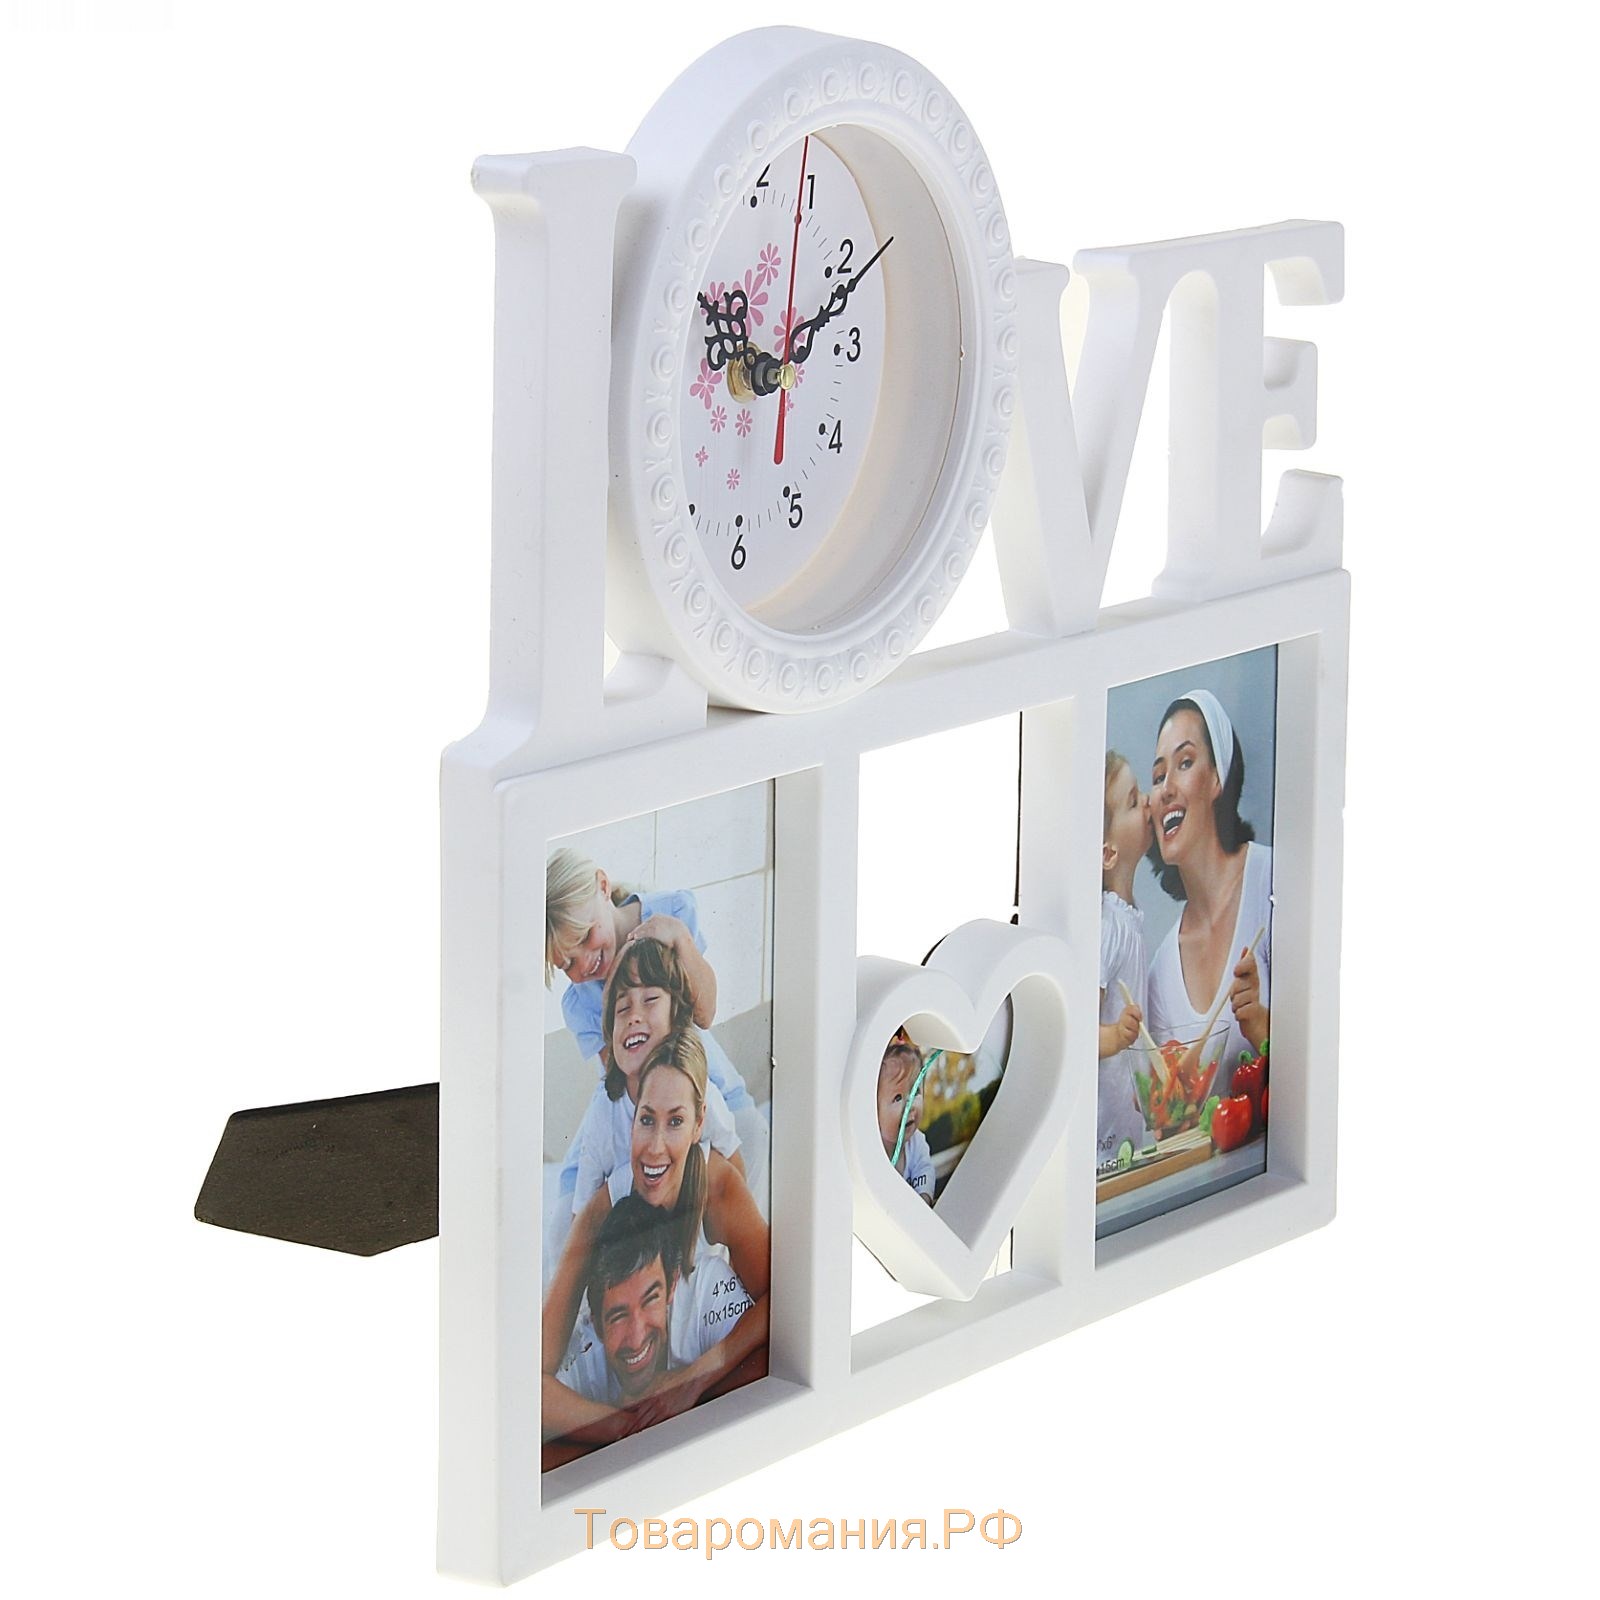 Часы настенные, серия: Фото, "Love", 3 фоторамки, белые, 34х36 см, микс